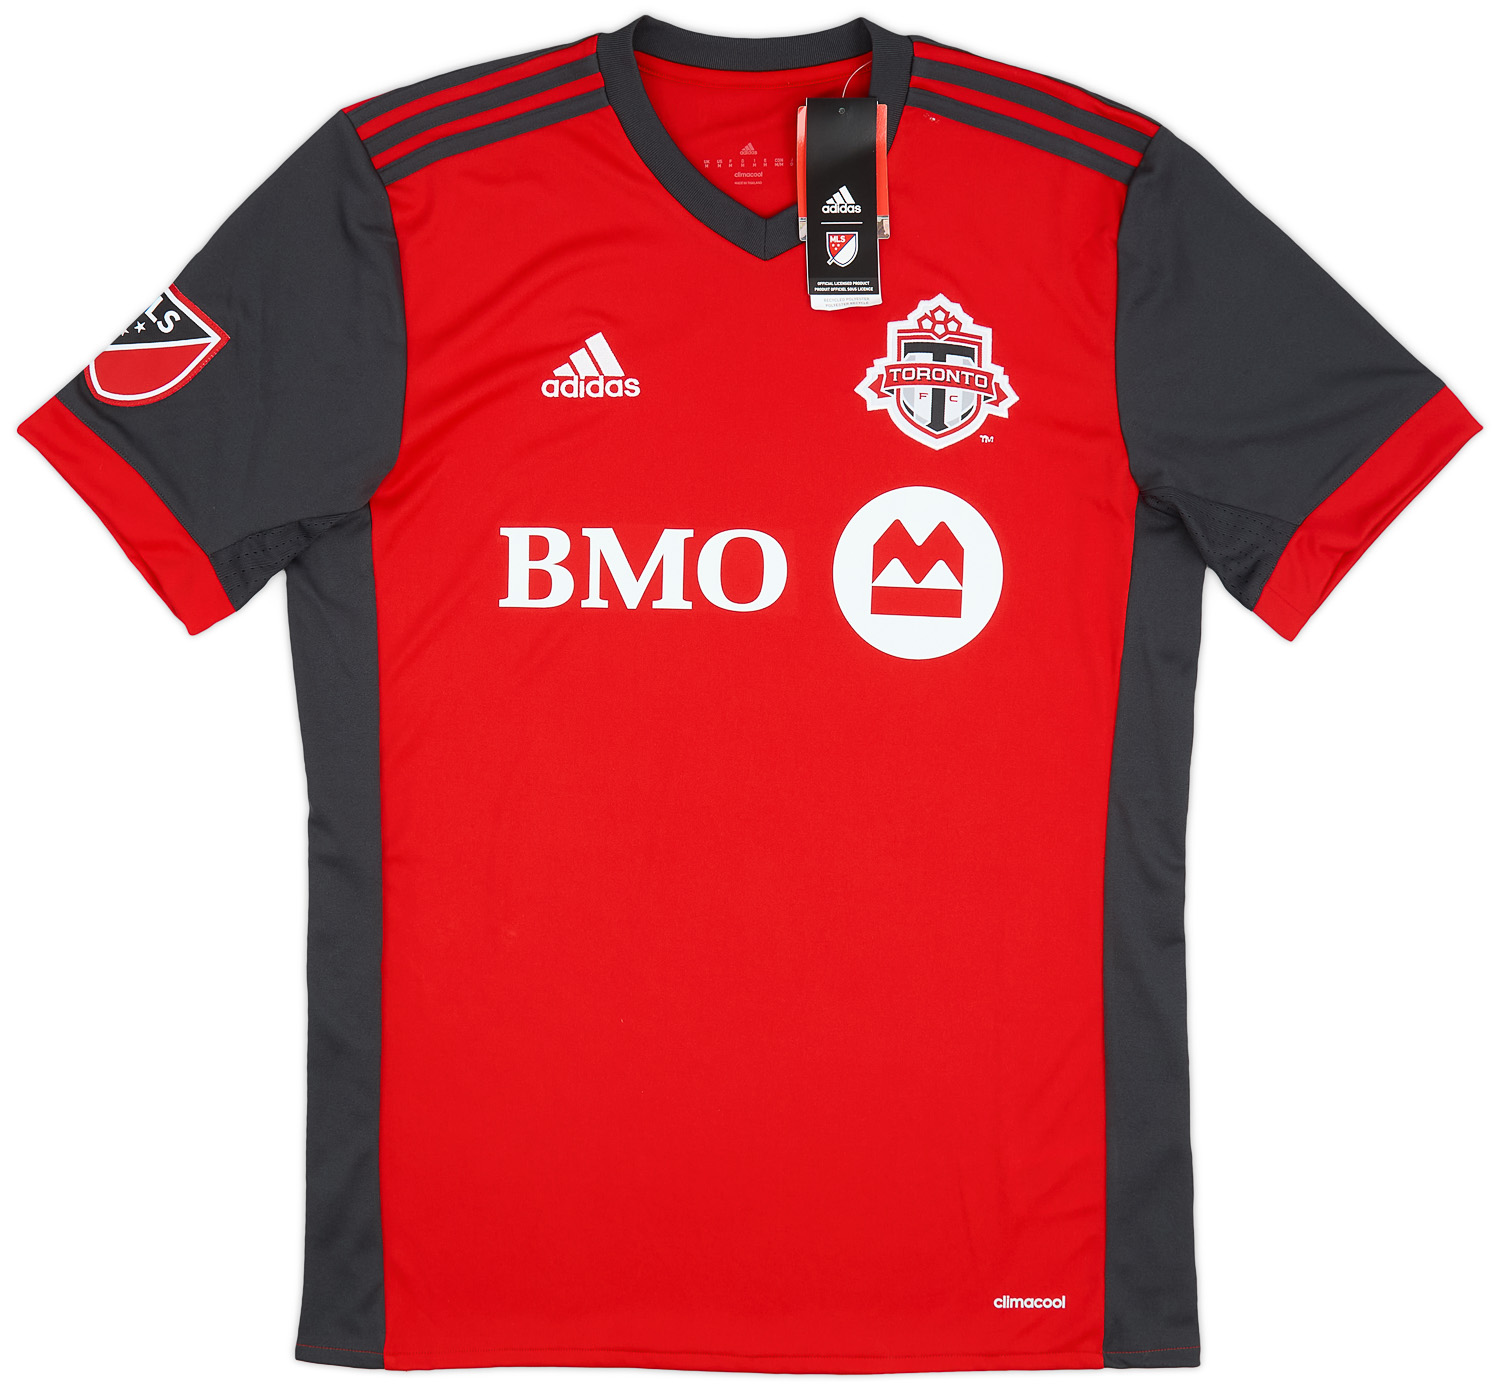 Retro Toronto FC Shirt